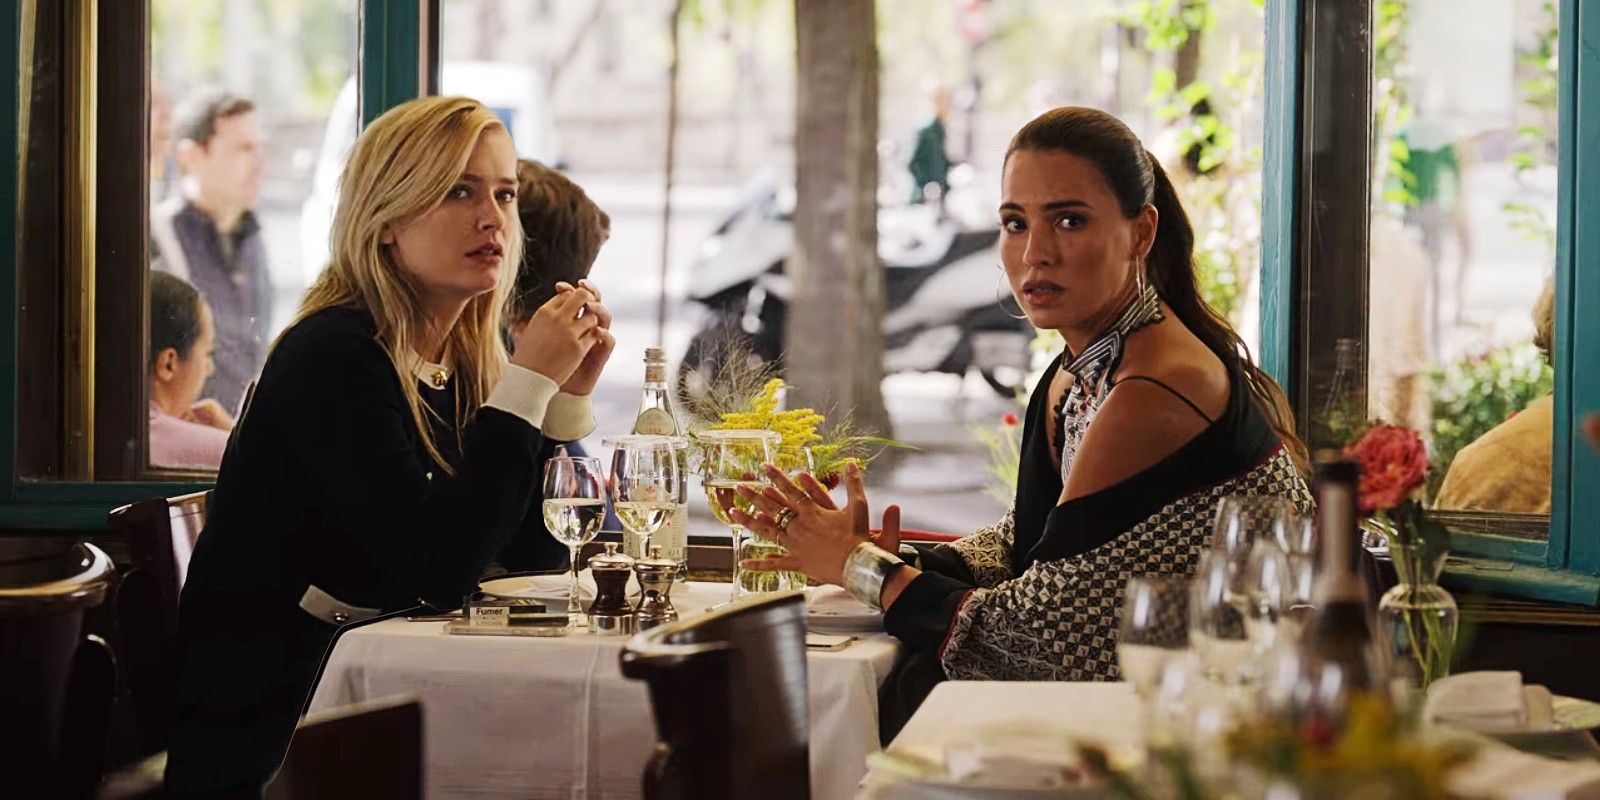 Camille Razat als Camille en Melia Kreiling als Sofia in de finale van seizoen 3 van Emily in Parijs